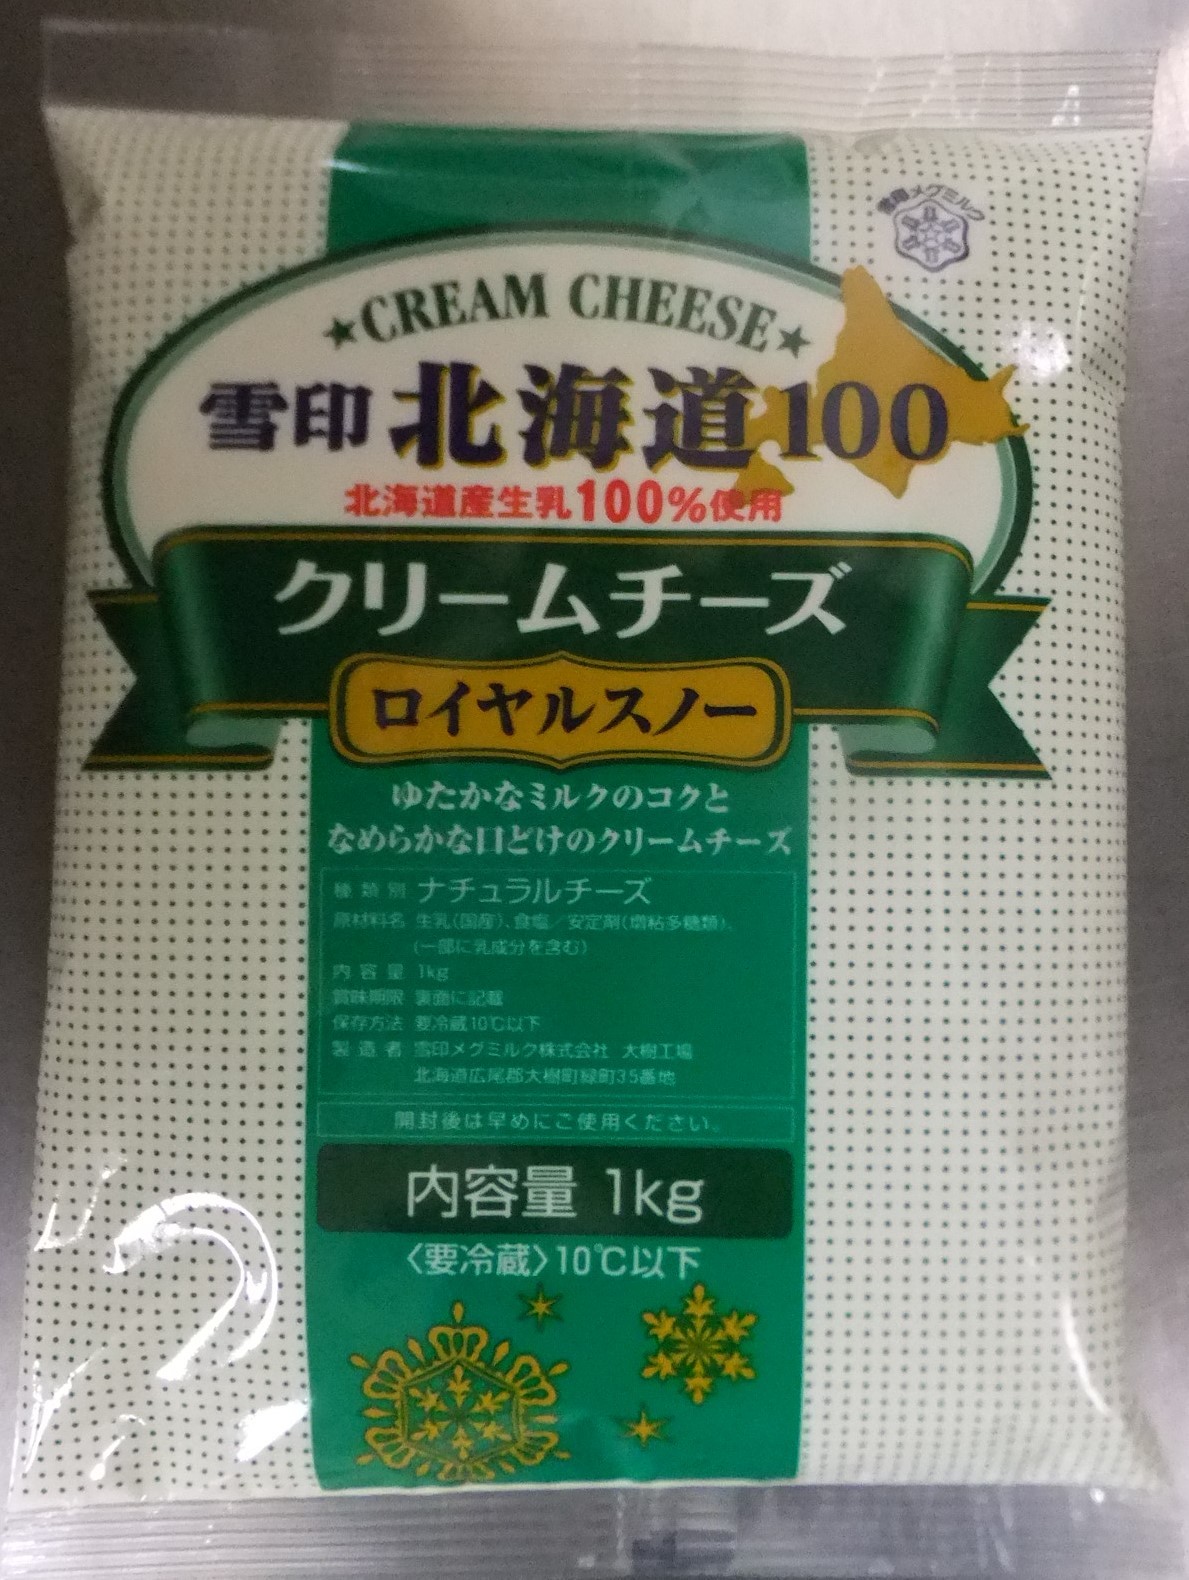 雪印 C1540北海道100 クリームチーズ ロイヤルスノー 1kg 菓子パン製造に必要な業務用材料や包装資材 機械器具の事ならプロフーズ